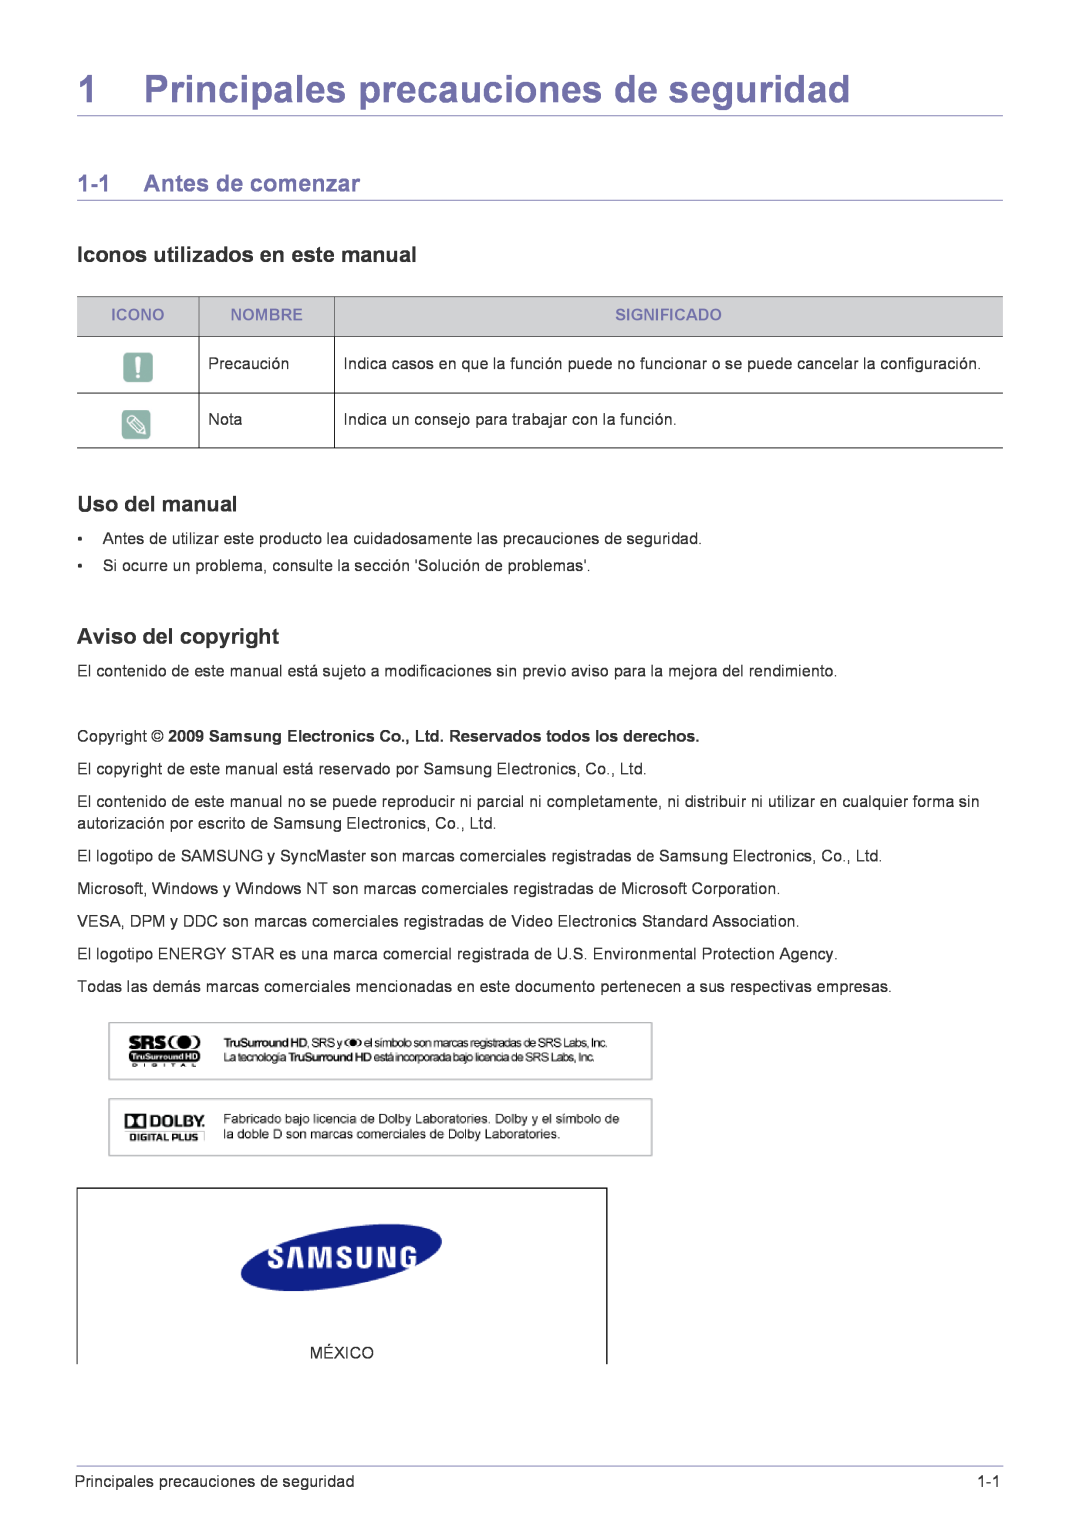 Samsung LS22FMDGF/EN Principales precauciones de seguridad, Antes de comenzar, Iconos utilizados en este manual, Nombre 